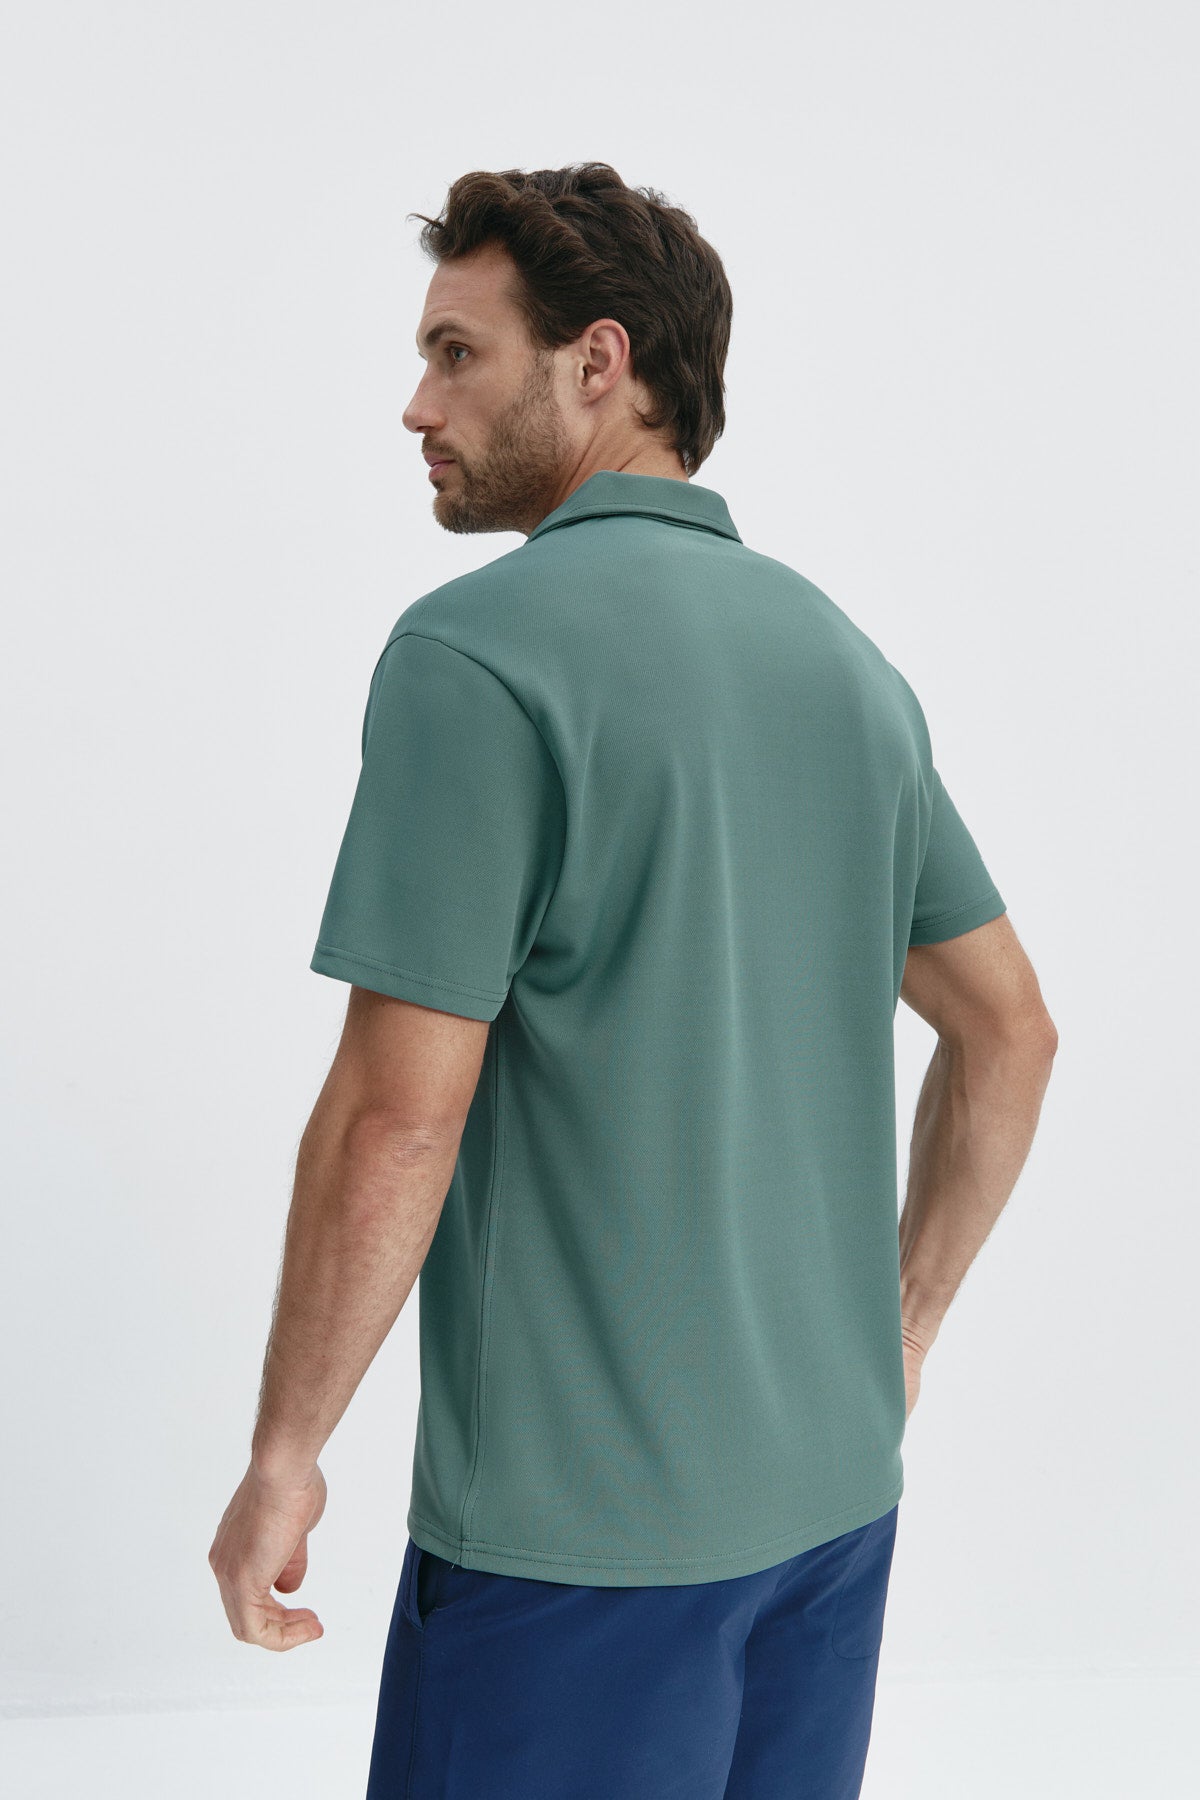 Polo manga corta para hombre en verde cecina de Sepiia, comodidad y estilo para cualquier ocasión. Foto espalda